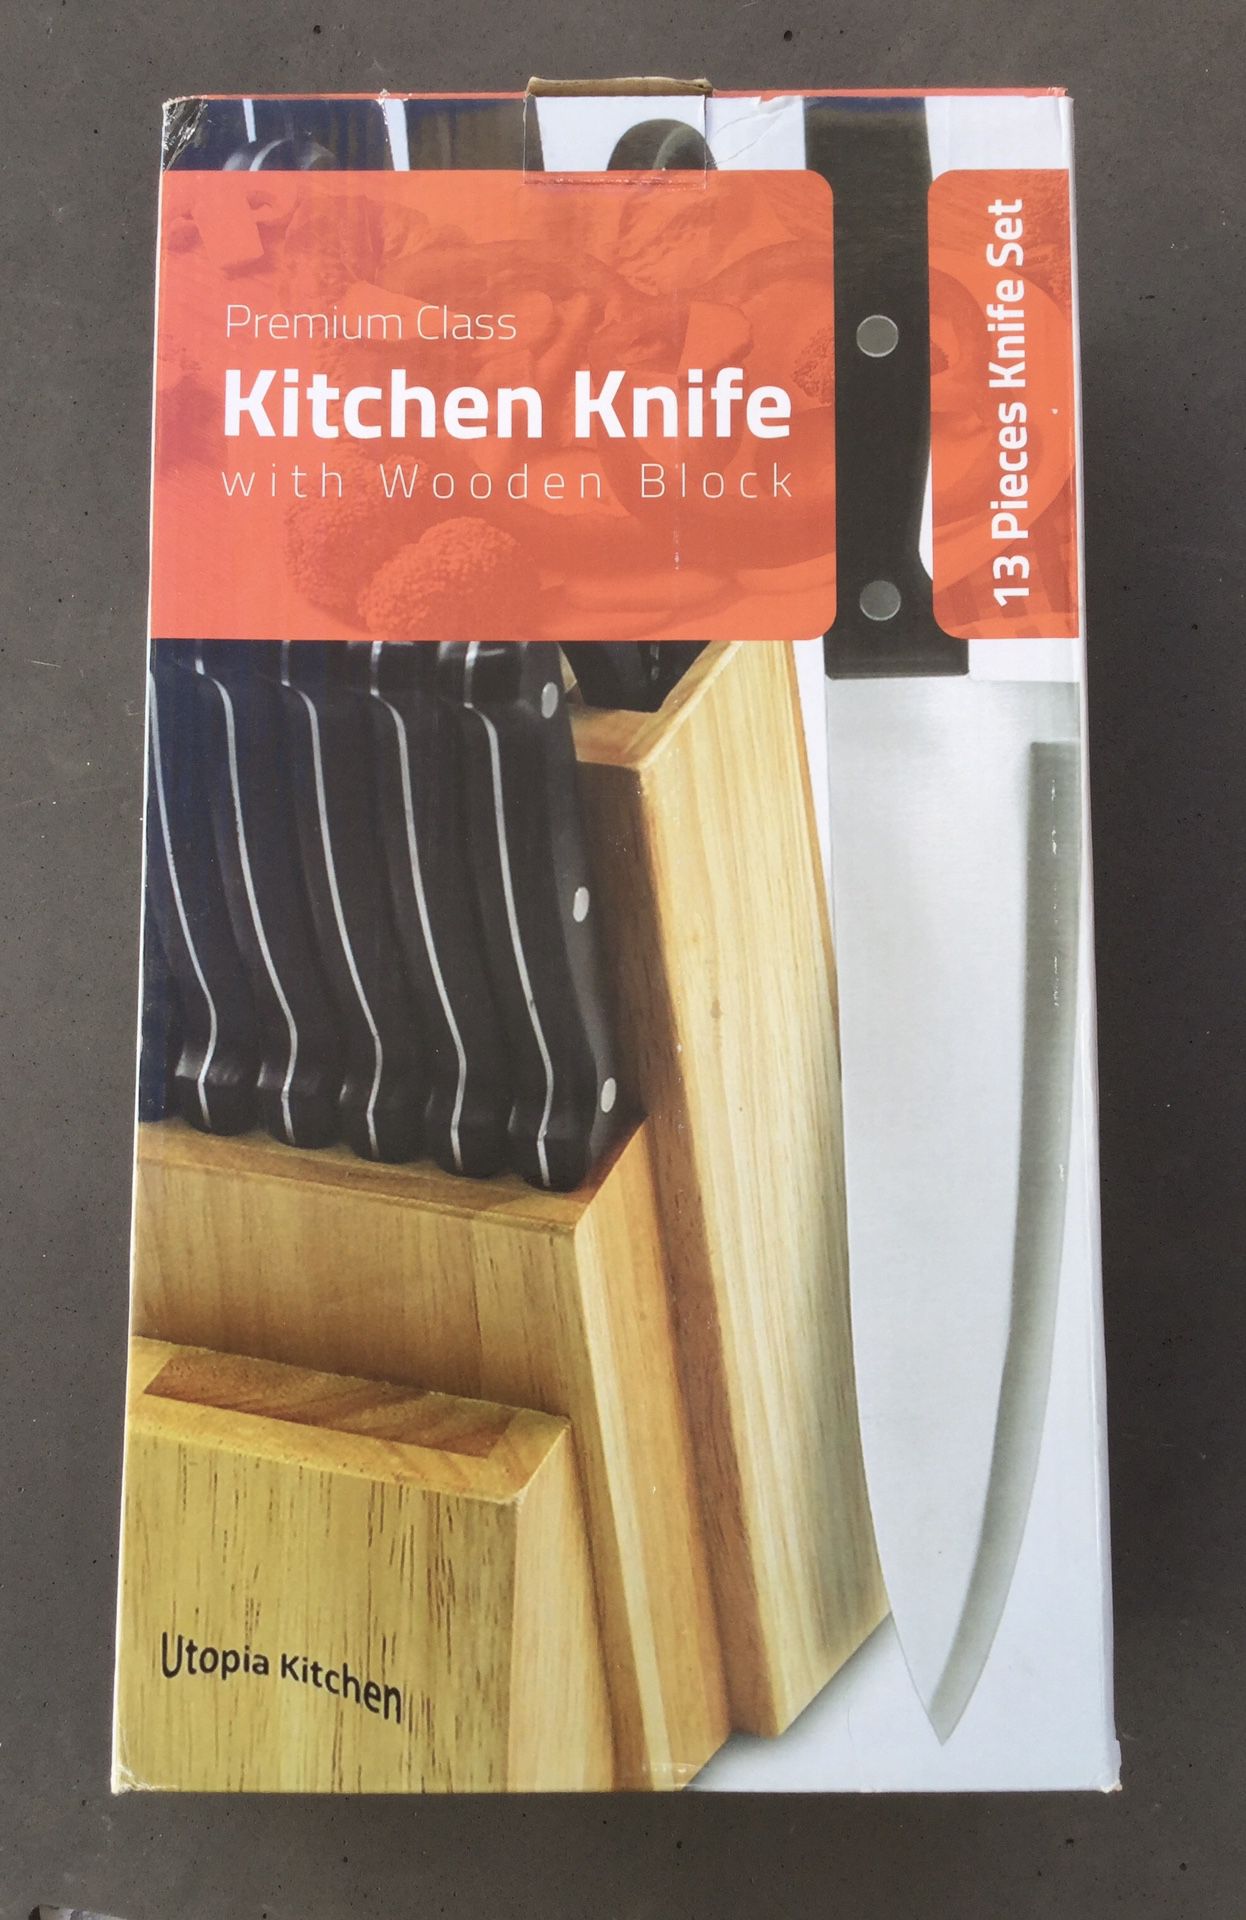 Utopia Kitchen Knives